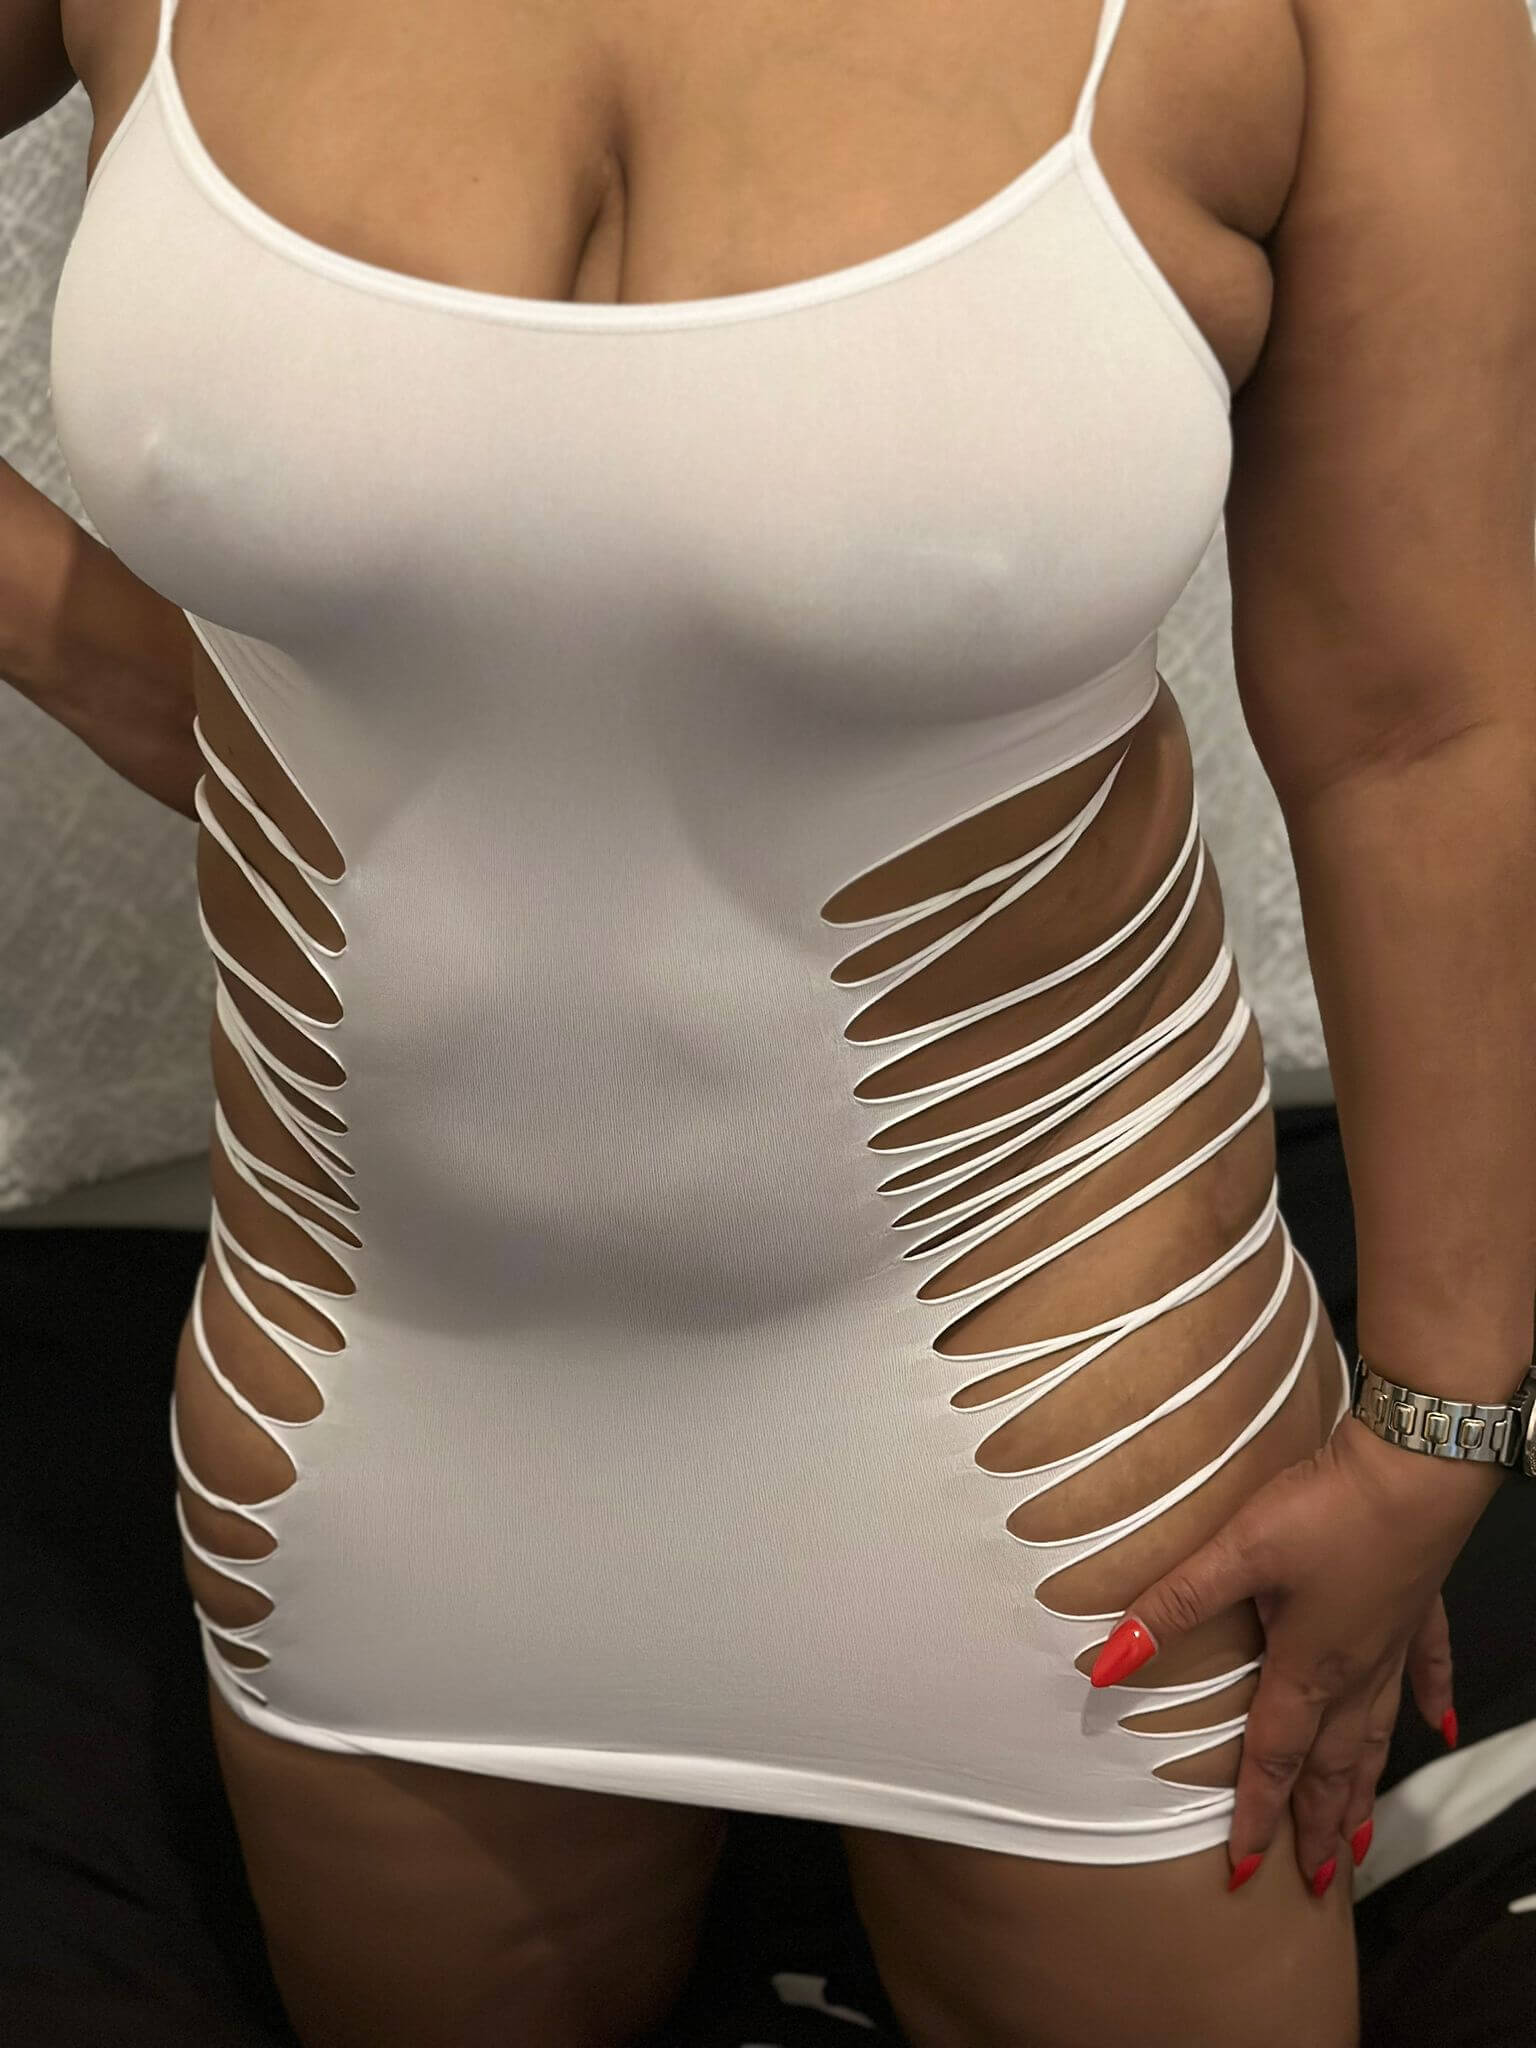 פטרשה- מבנה גוף סקסי אישה חמה בתל אביב